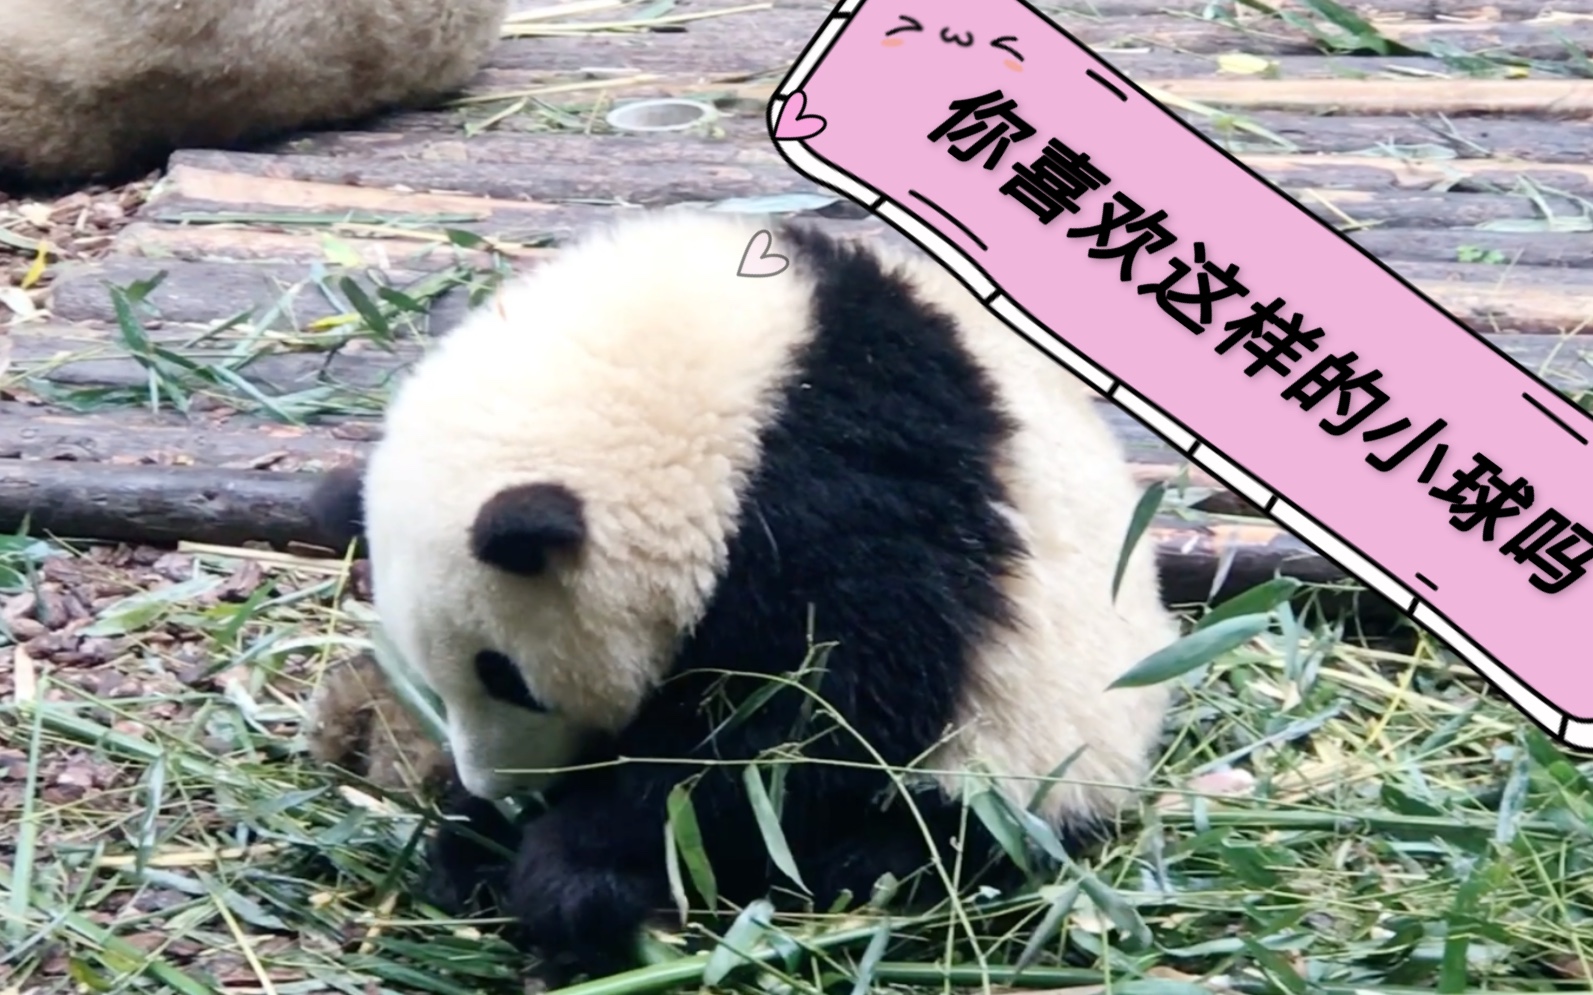 熊猫洗淋浴、河马吃西瓜……“花式降温”萌萌哒 - 封面新闻